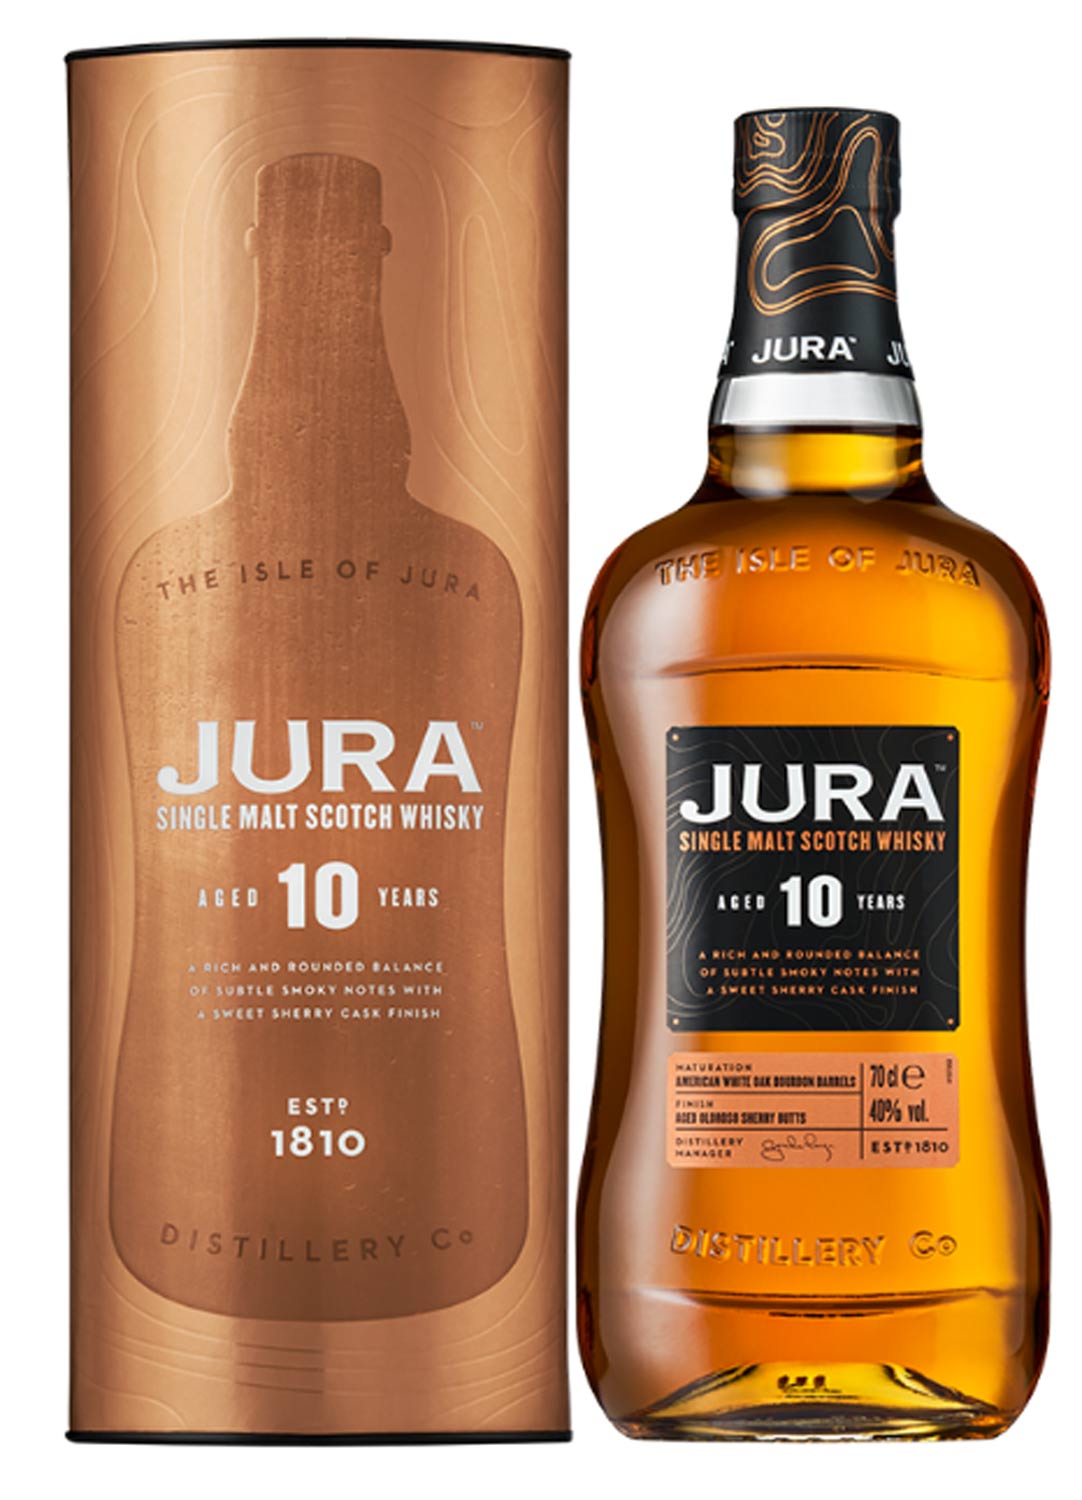  Schottischer Whisky Jura Single Malt Scotch Whisky 10 Years Old 